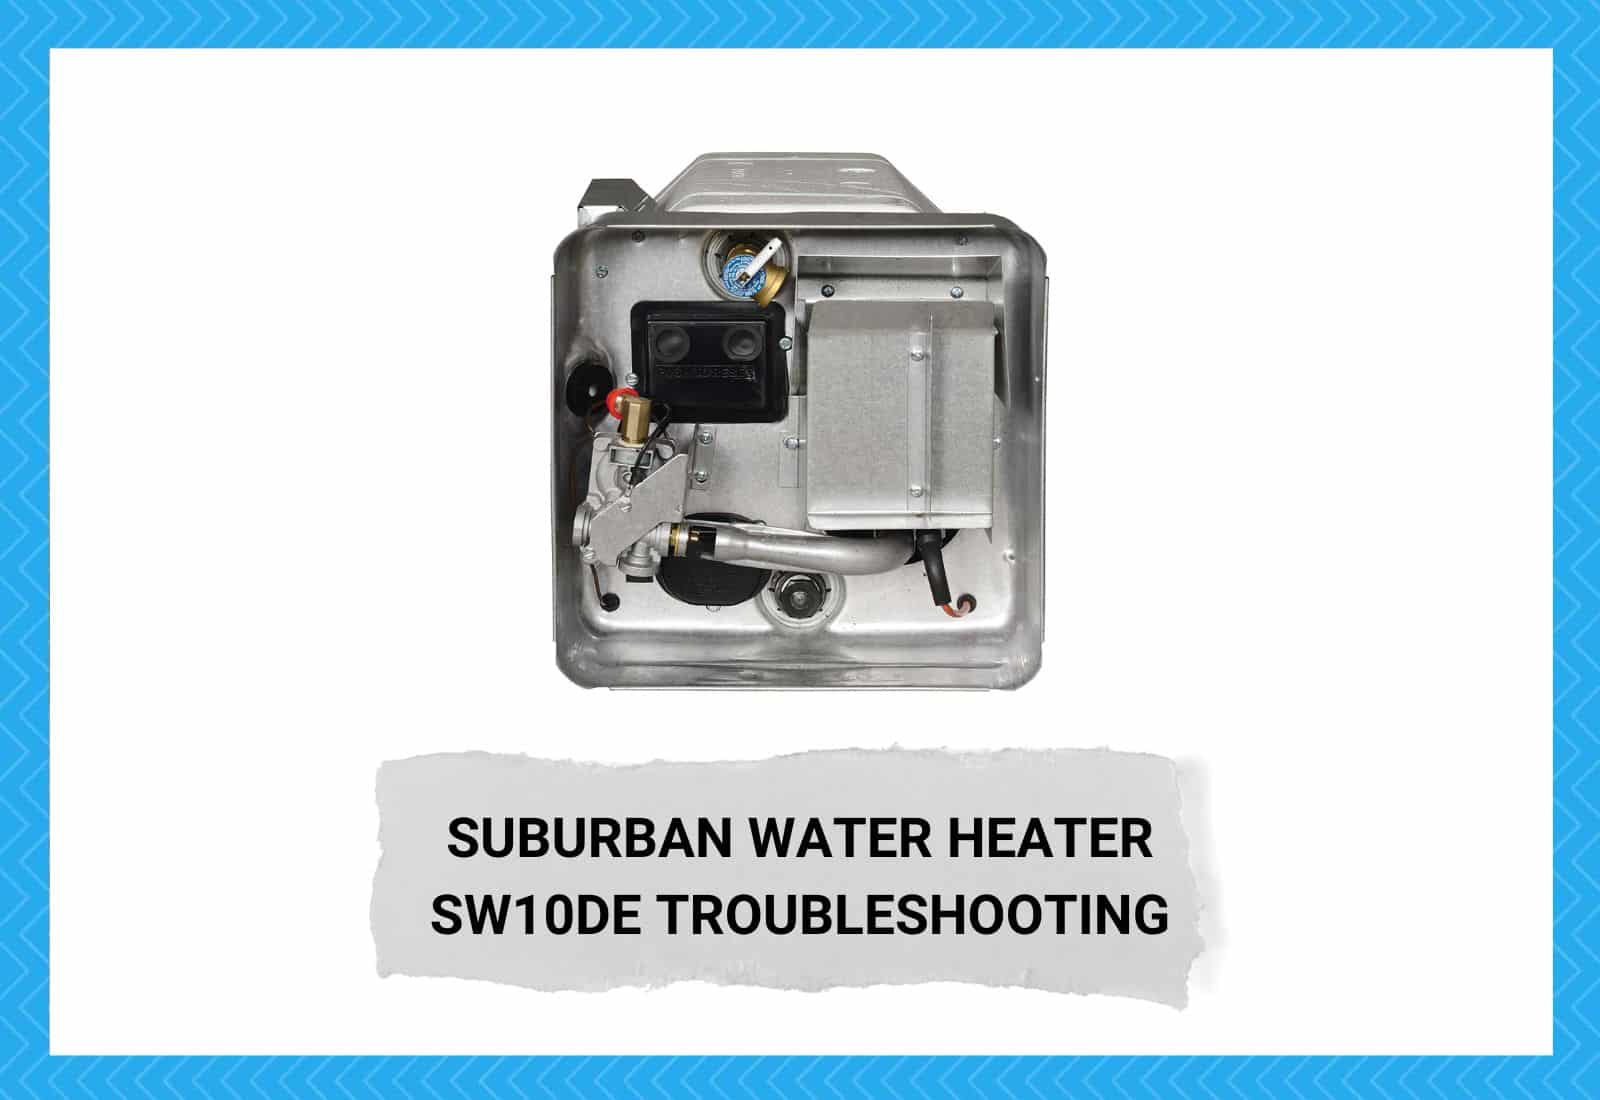 Suburban Water Heater SW10DE Troubleshooting